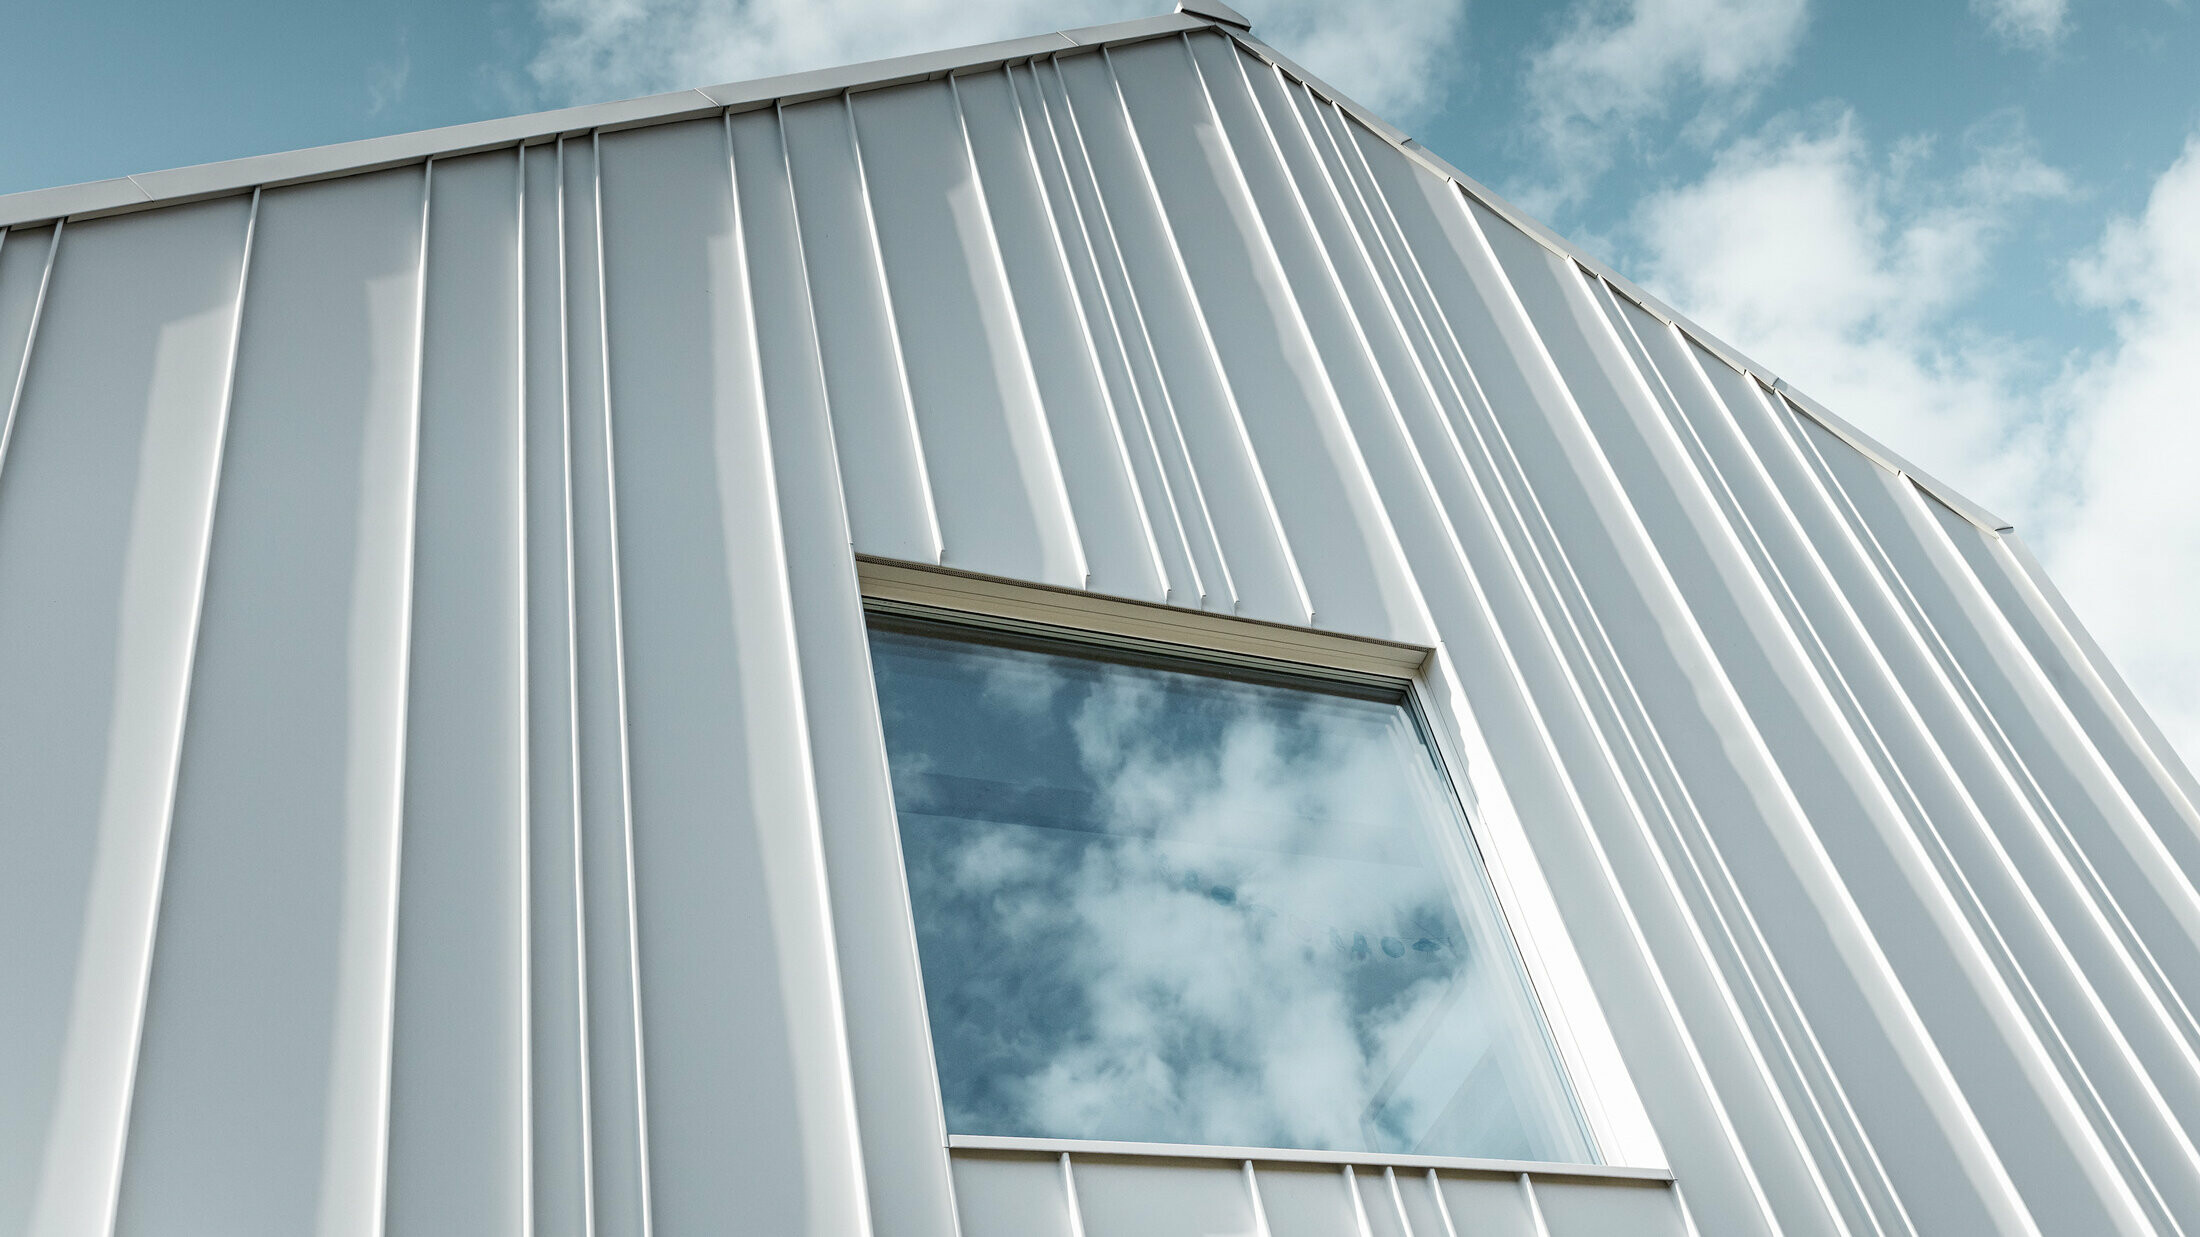 izvedba PREFALZ v beli barvi s pravokotnim pokončnim zgibom na fasadi z različnimi širinami trakov in oknom